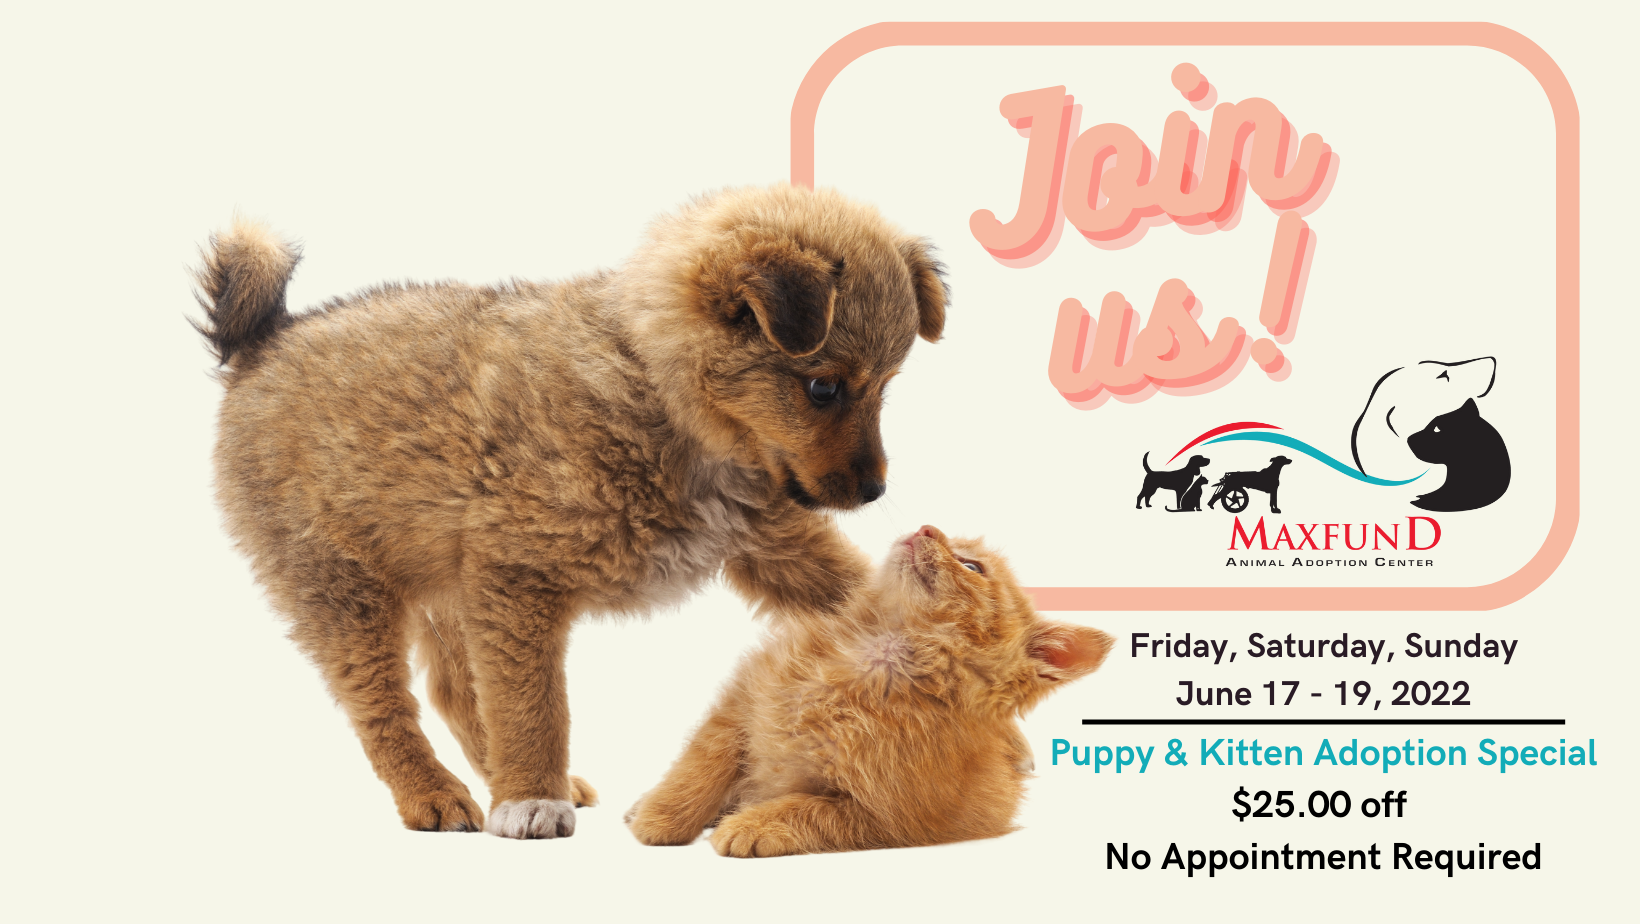 
Puppy & Kitten Adoption Special